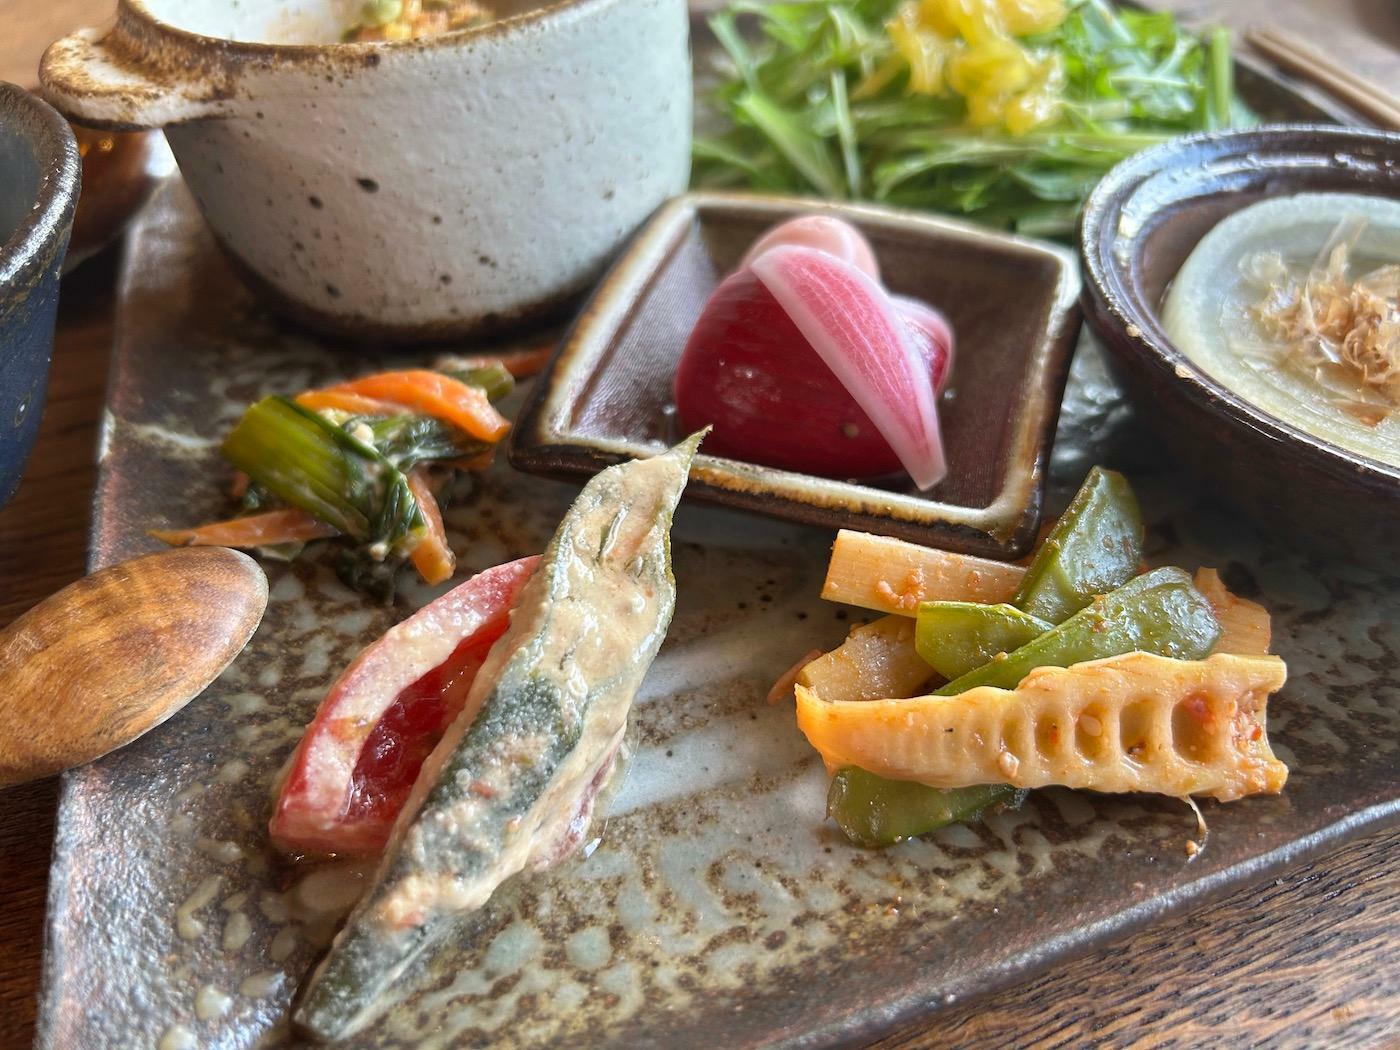 「小松菜と人参のひしおマヨ」に使われている「ひしお」は、麹を使った調味料